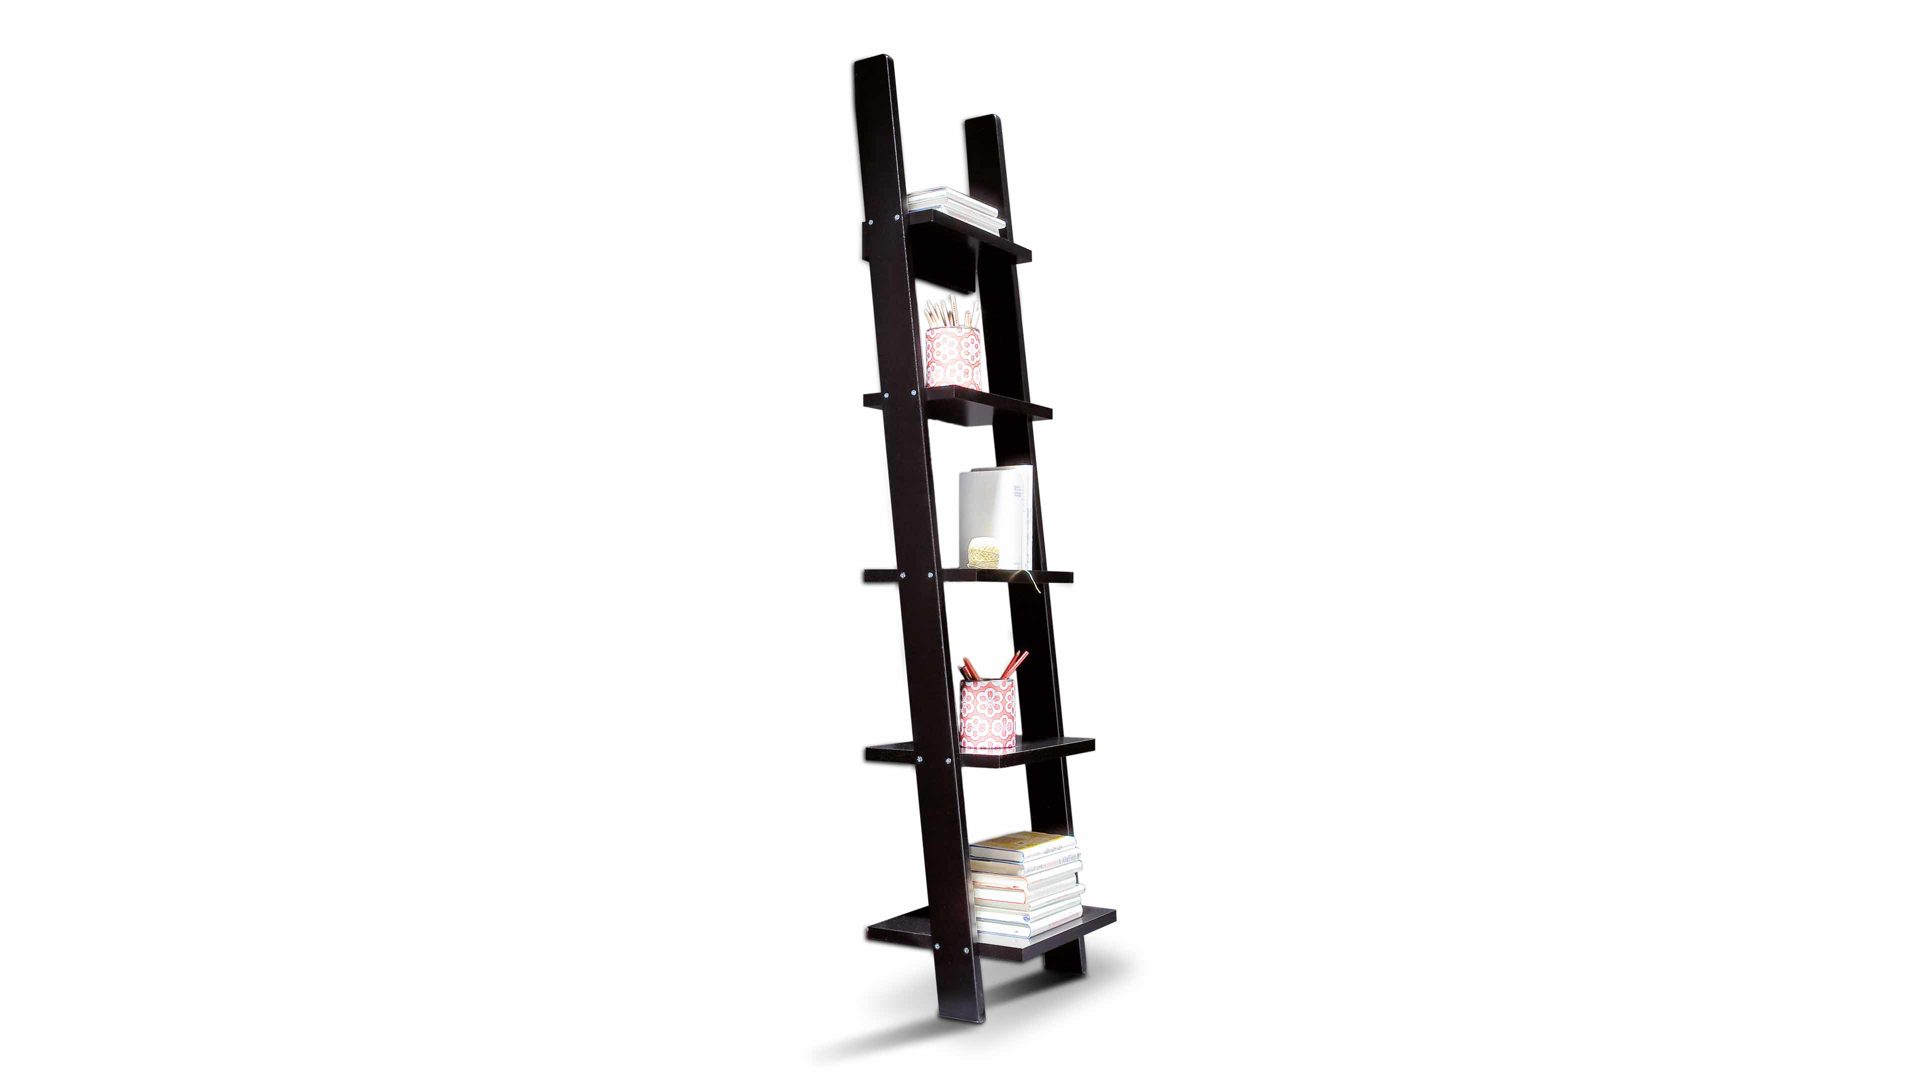 Regal Tenzo aus MDF in Schwarz Leiter-Regal, ein charmantes Kleinmöbel mit Komfort schwarz lackiertes MDF - ca. 190 cm hoch